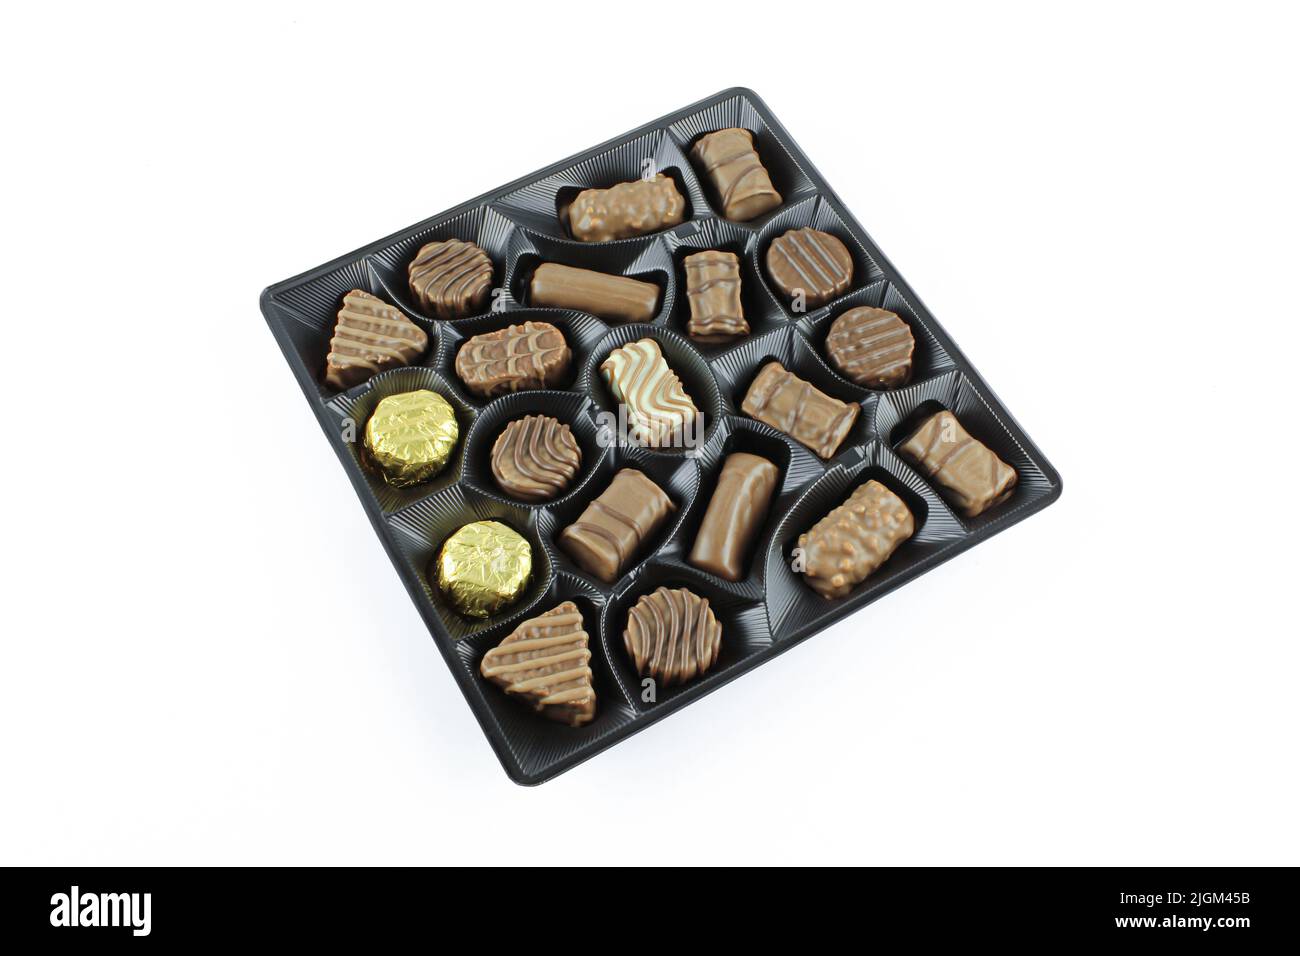 Varietà di praline al cioccolato dolce in confezioni di plastica isolate su fondo bianco Foto Stock